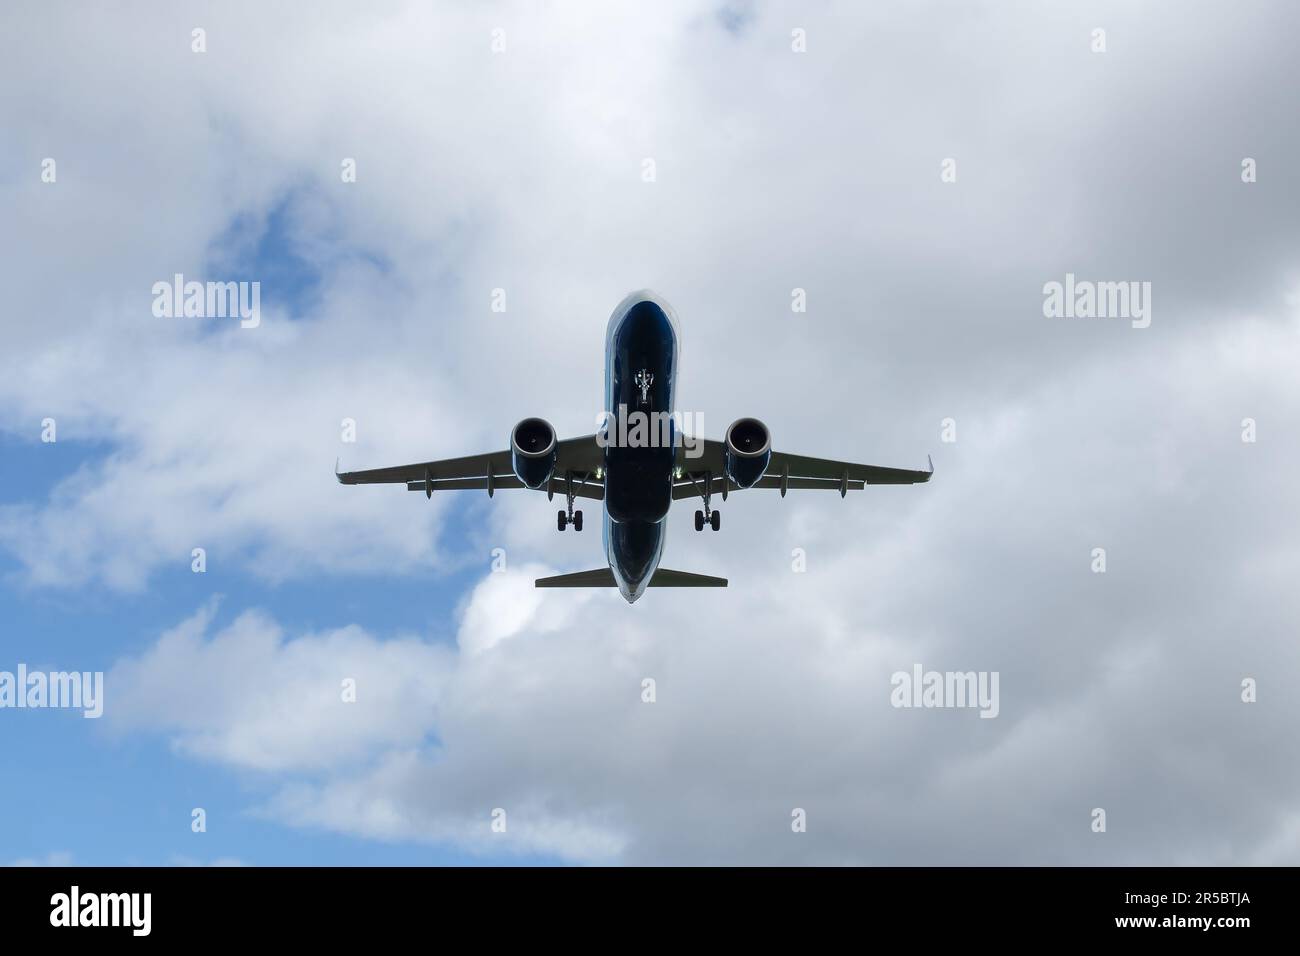 Das Passagierflugzeug landet. Lufttransport mit Fahrwerk gegen den Himmel Stockfoto